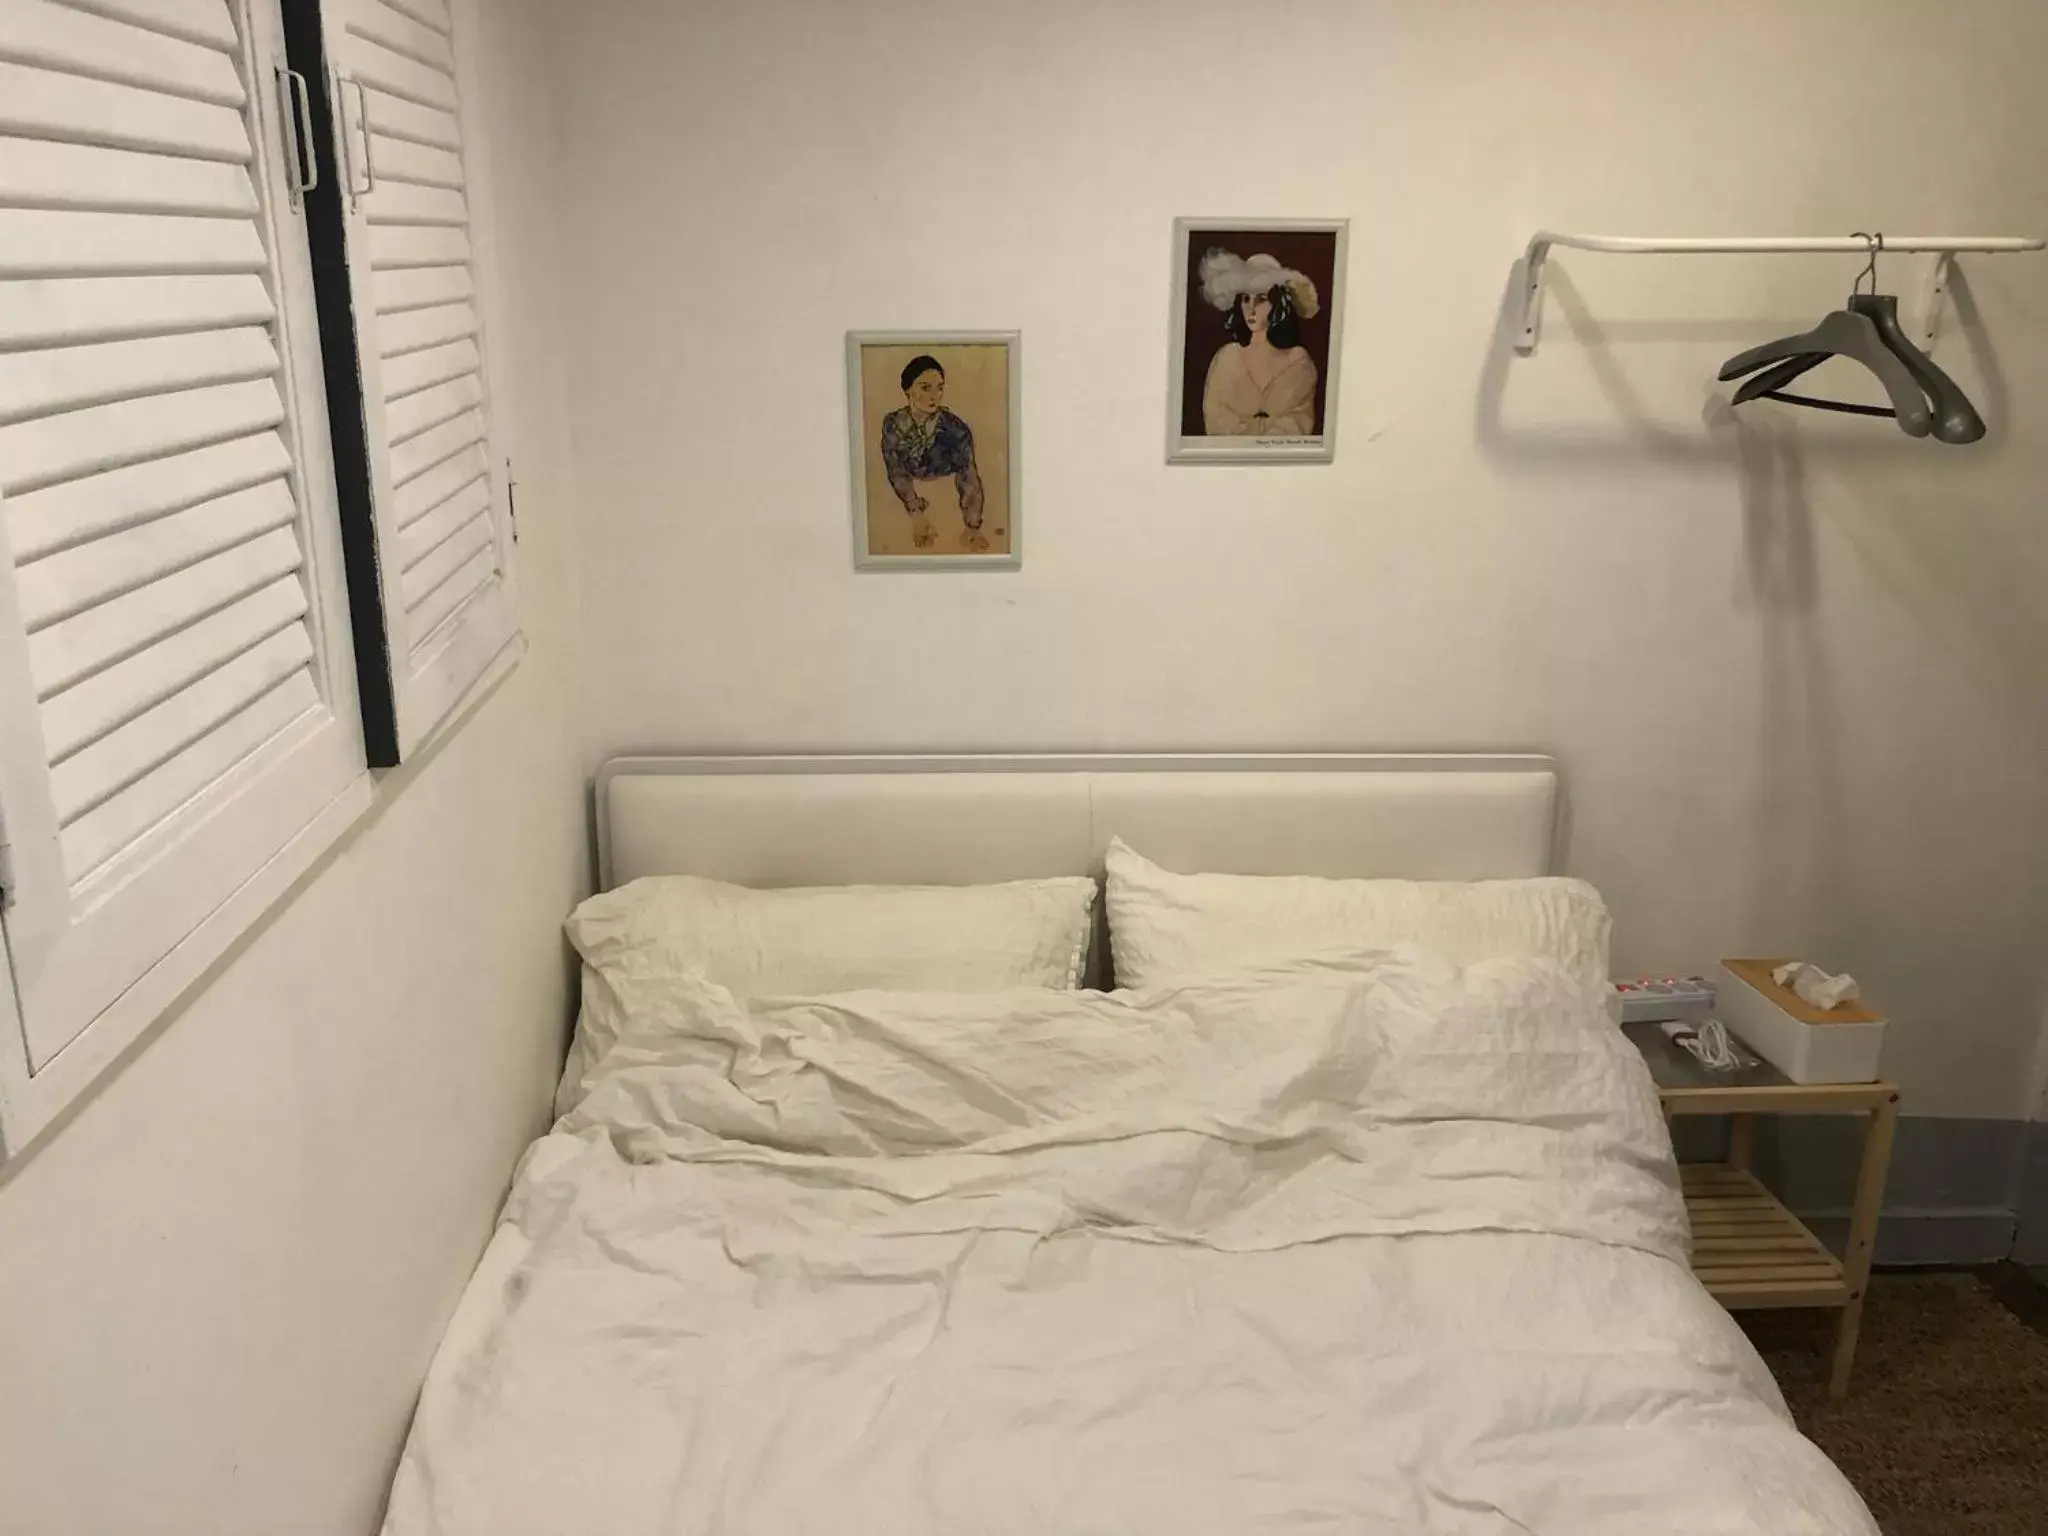 Bed in Hostel Seoul